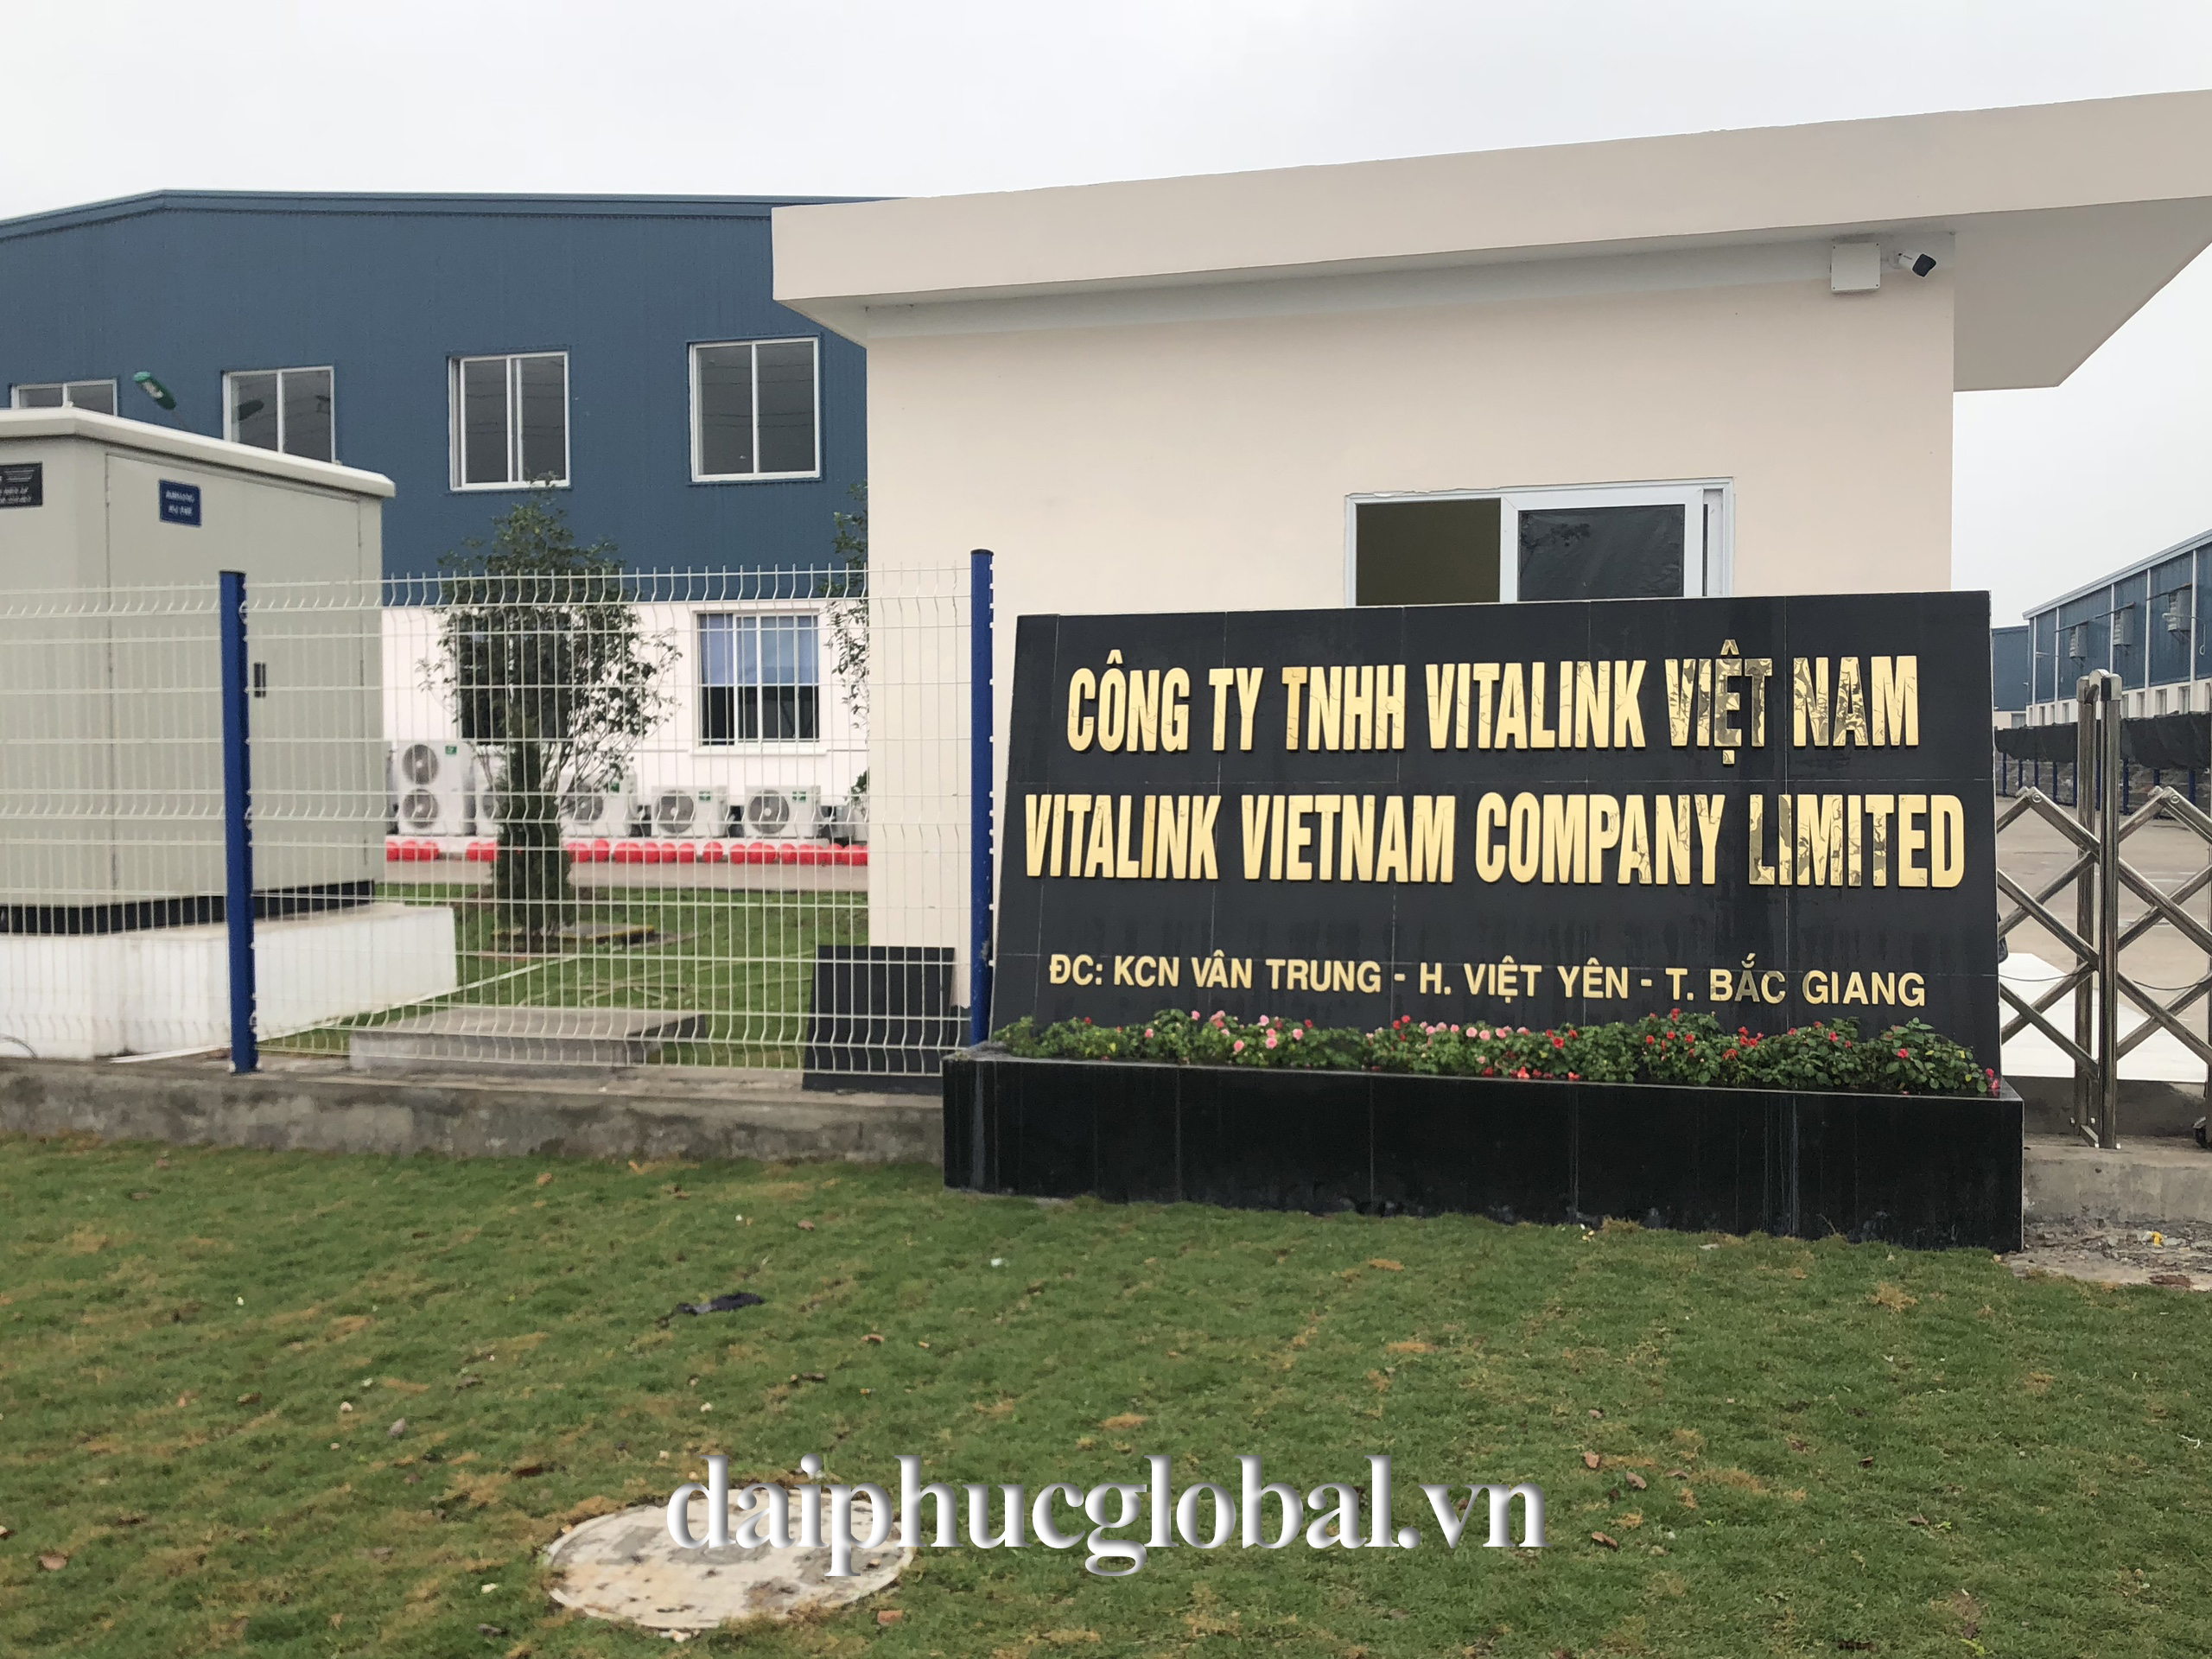 Nhà máy Vitalink Việt Nam